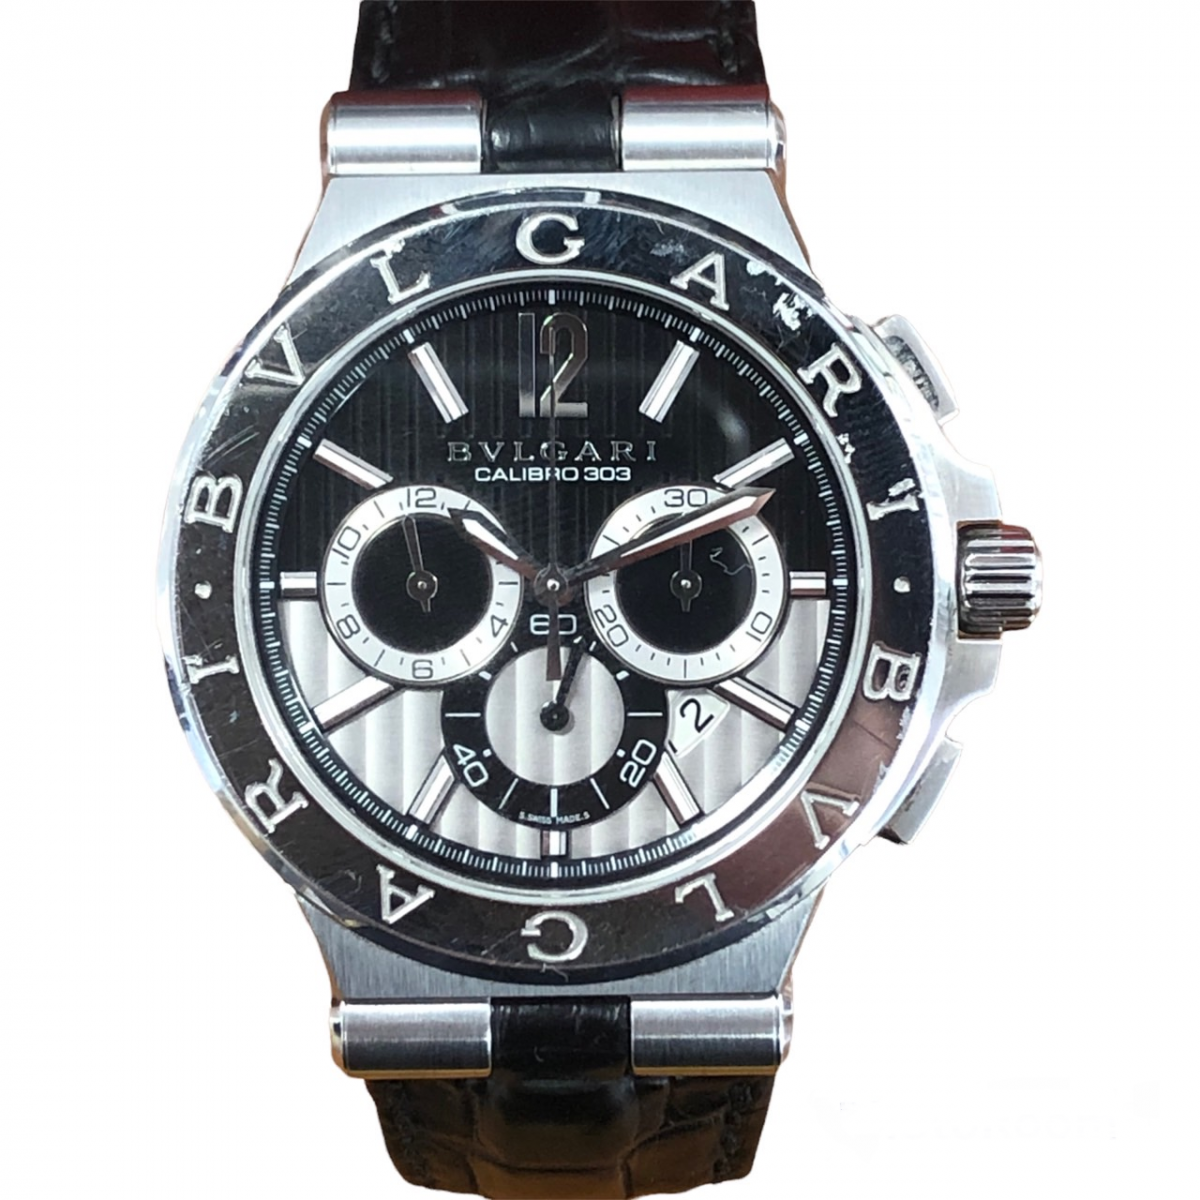 ブルガリのディアゴノカリブロ303 DG42SCH デイトクロノグラフ腕時計の買取実績です。